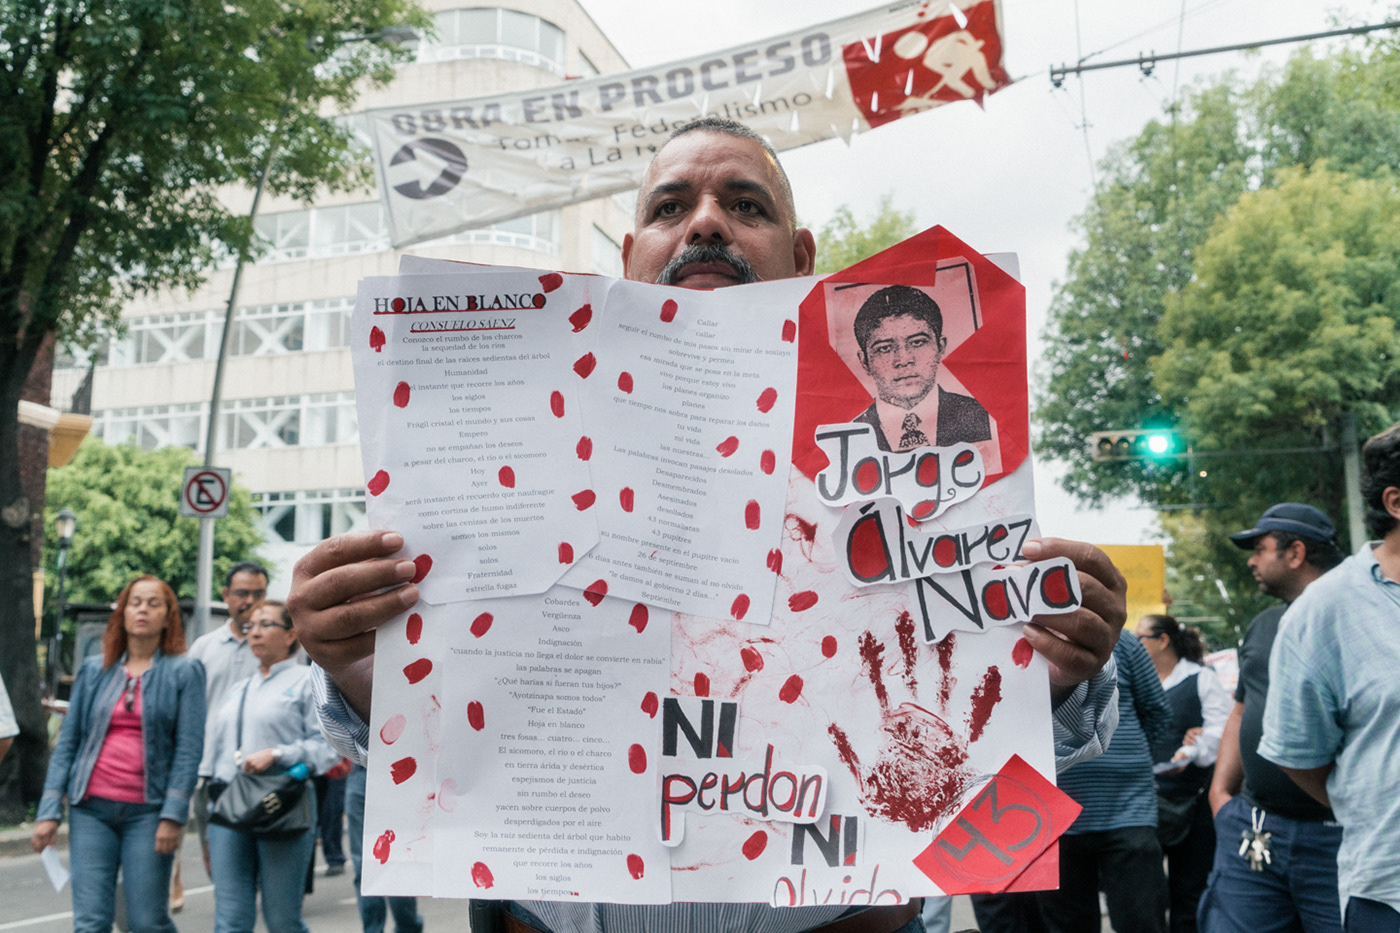 Ayotzinapa CuarentayTres Derechos humanos desaparecidos marcha mexico normalistas